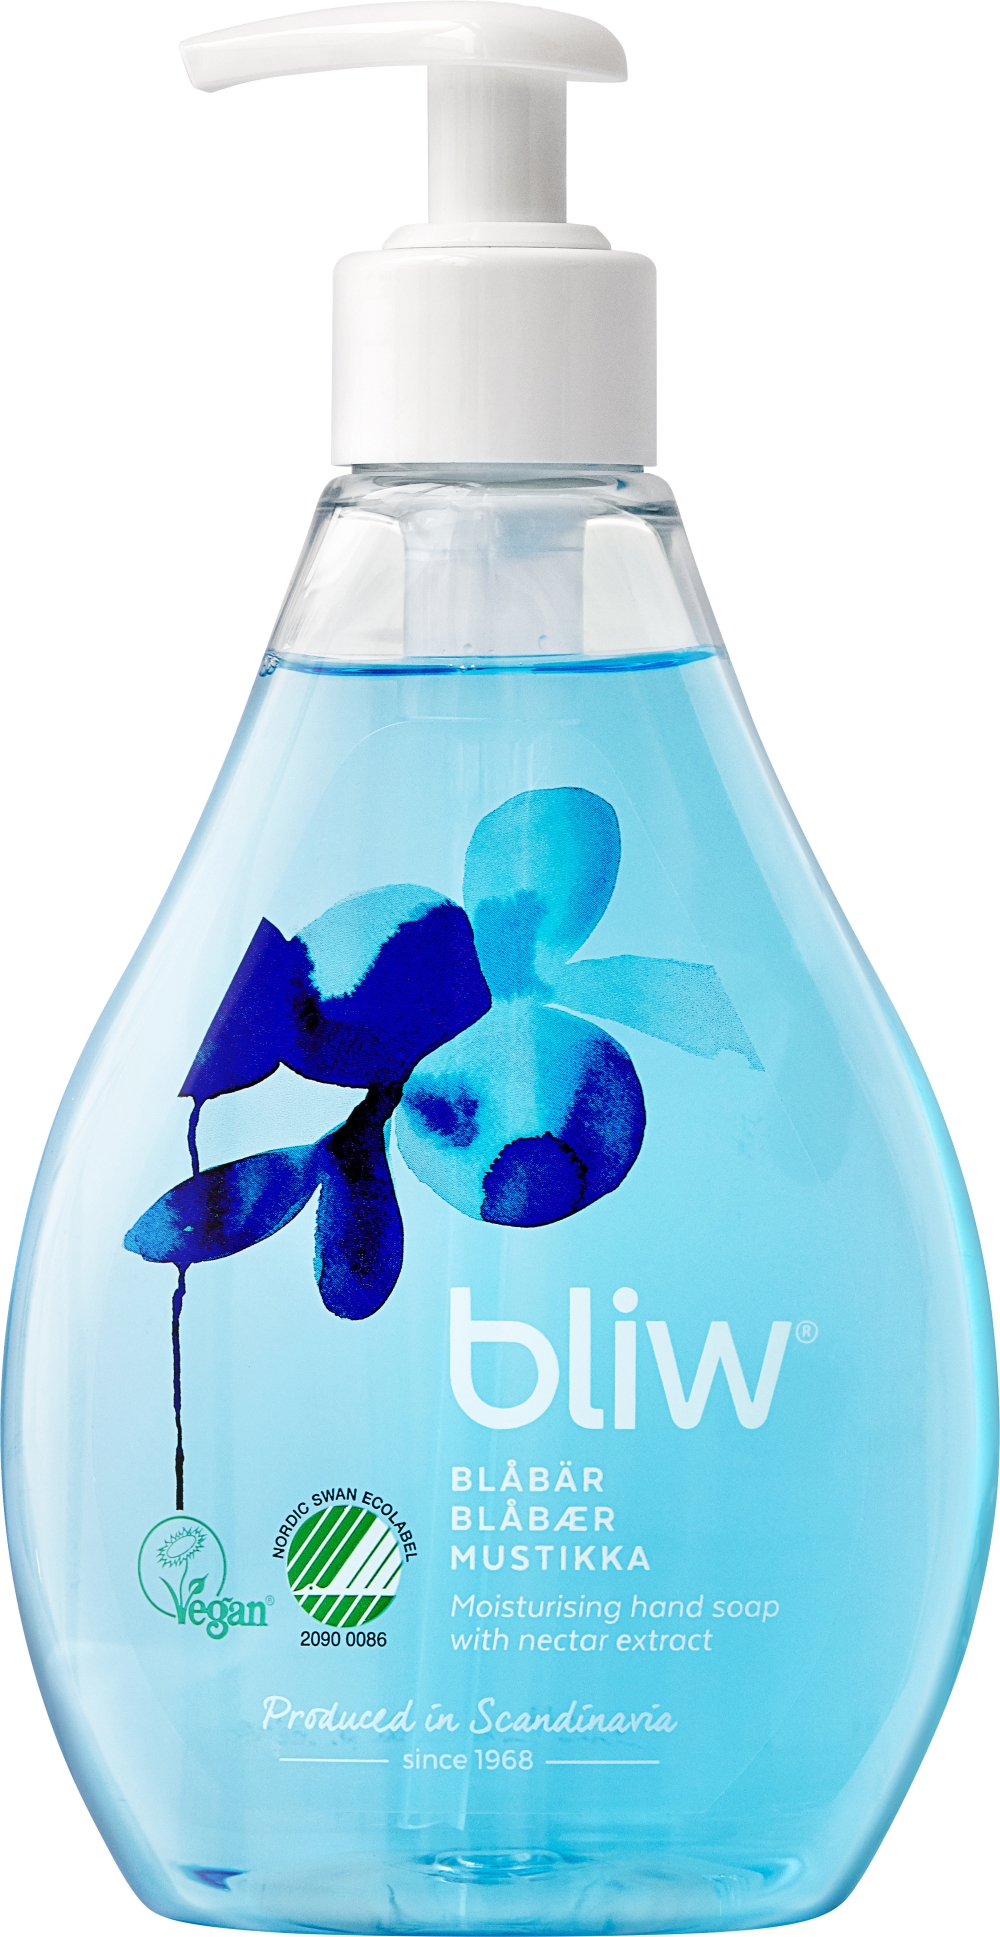 Tvål flytande Bliw - 300ml m pump pH8,7 blåbär - 8 st